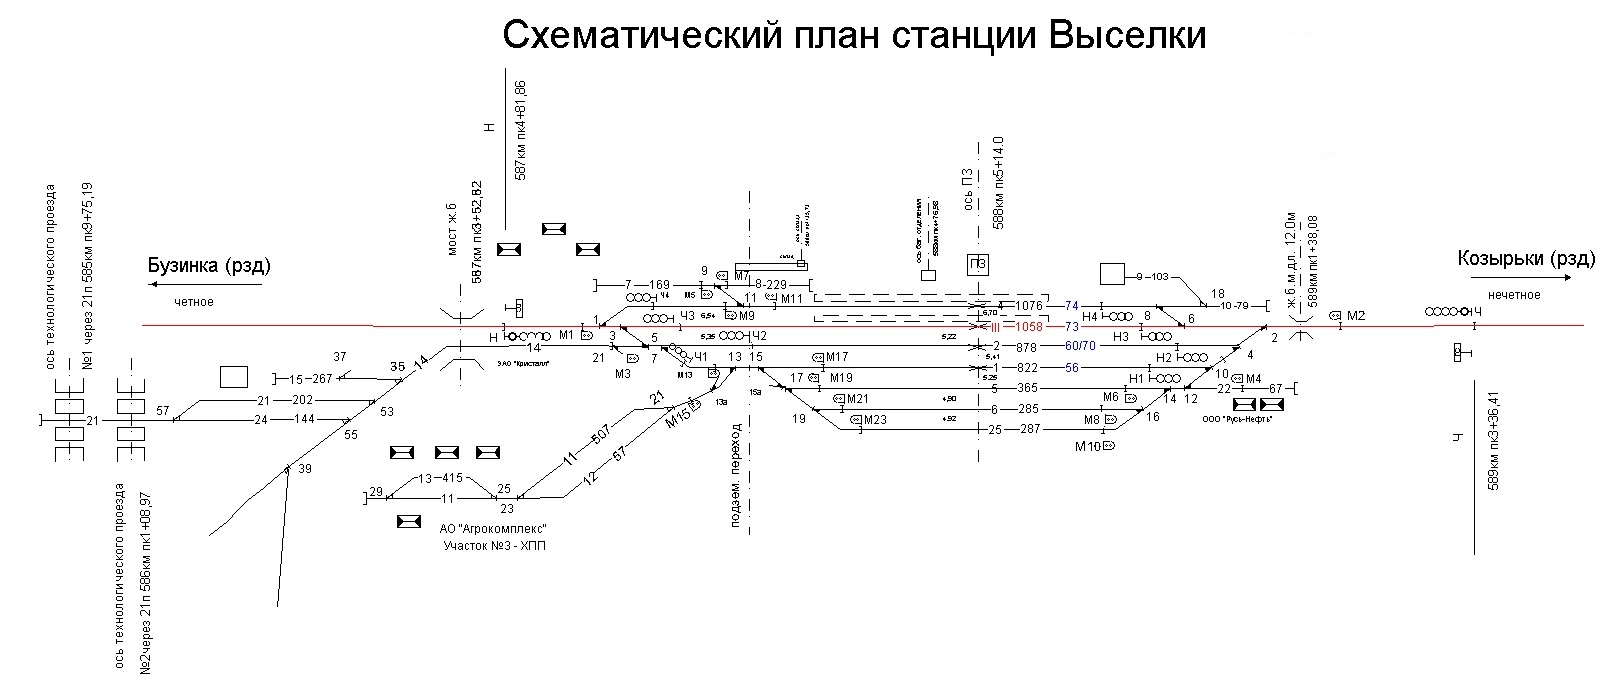 Схематические планы железнодорожных станций